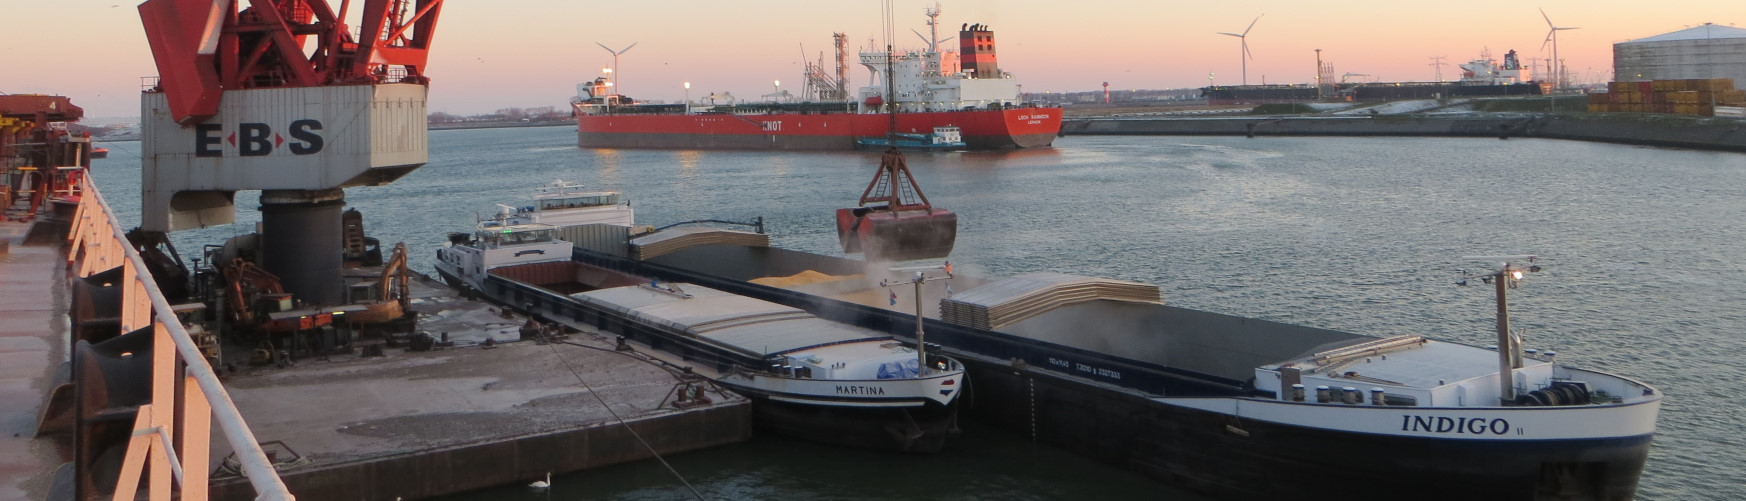 marine cargo surveyors, Rotterdam, Netherlands